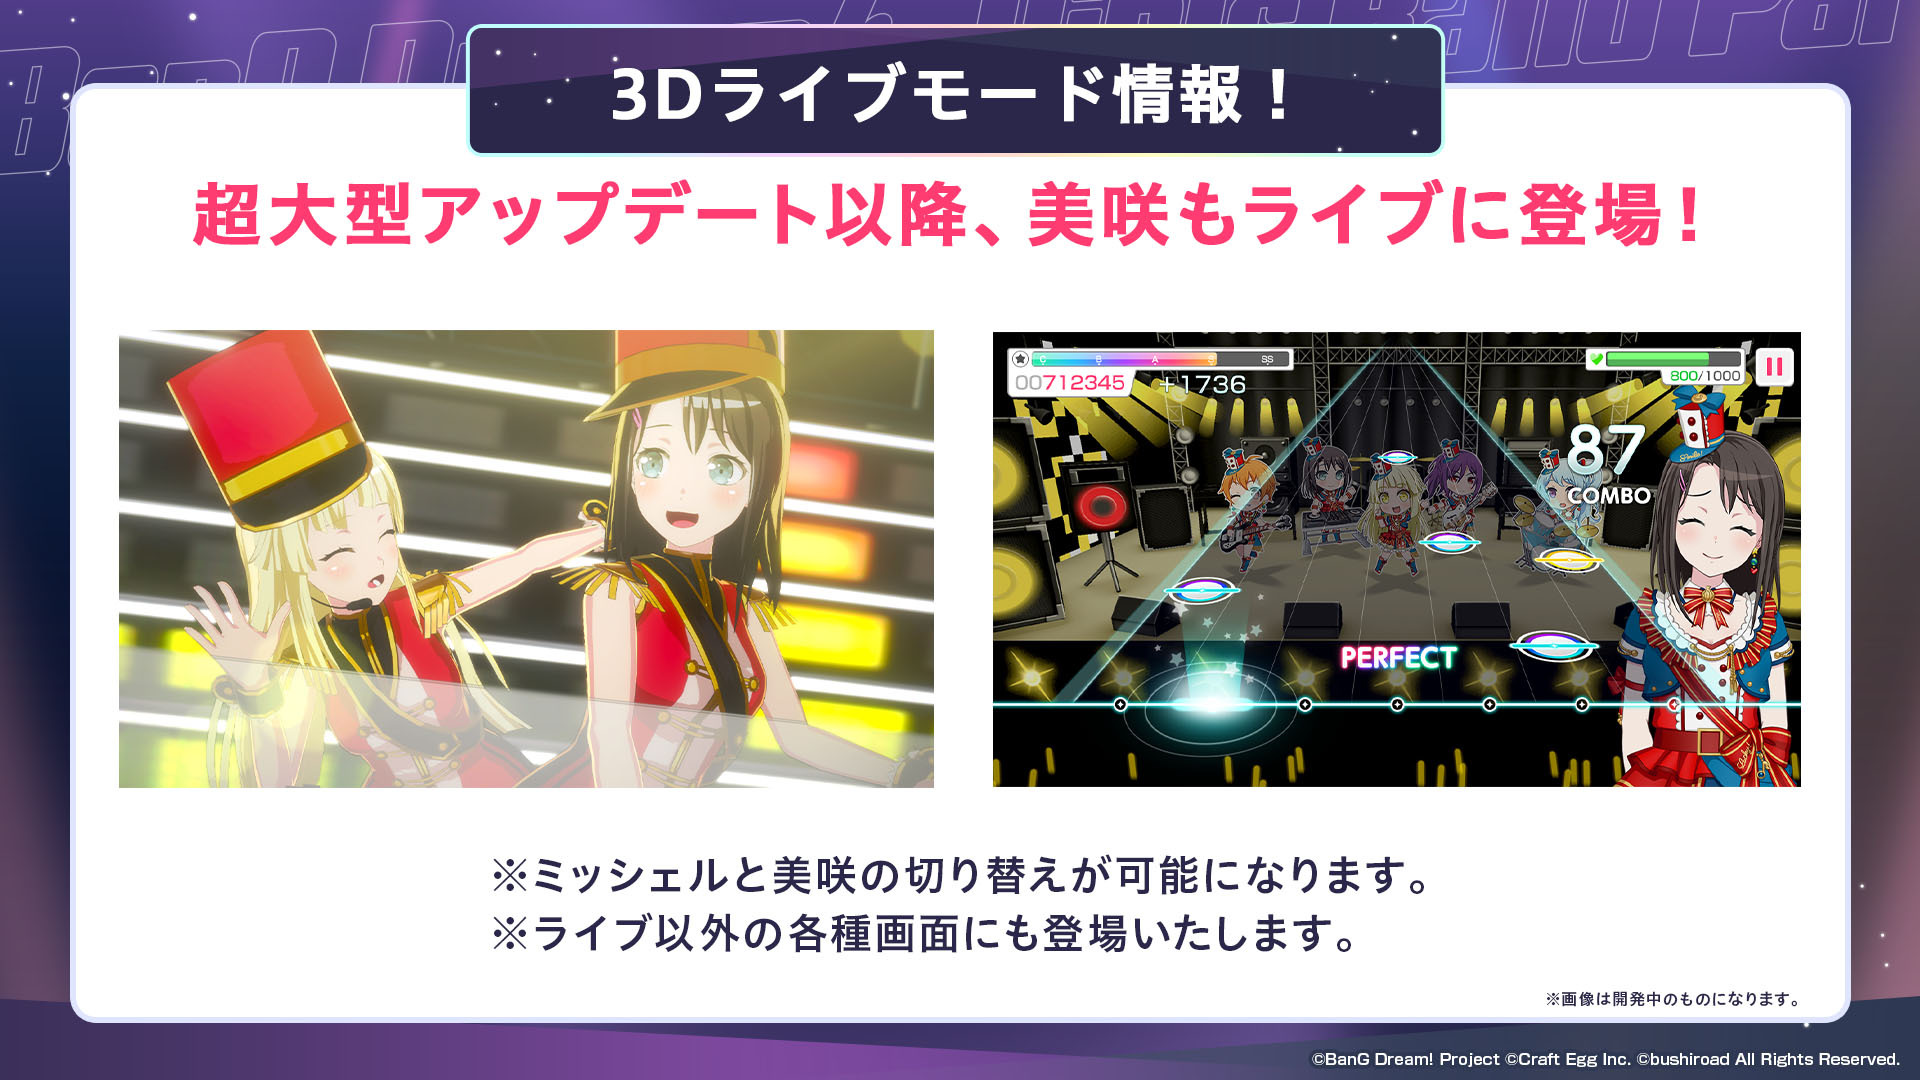 《BanG Dream！少女乐团派对》日版将于 3/16 实施六周年超大型更新 3D Live 及新视觉图曝光插图4